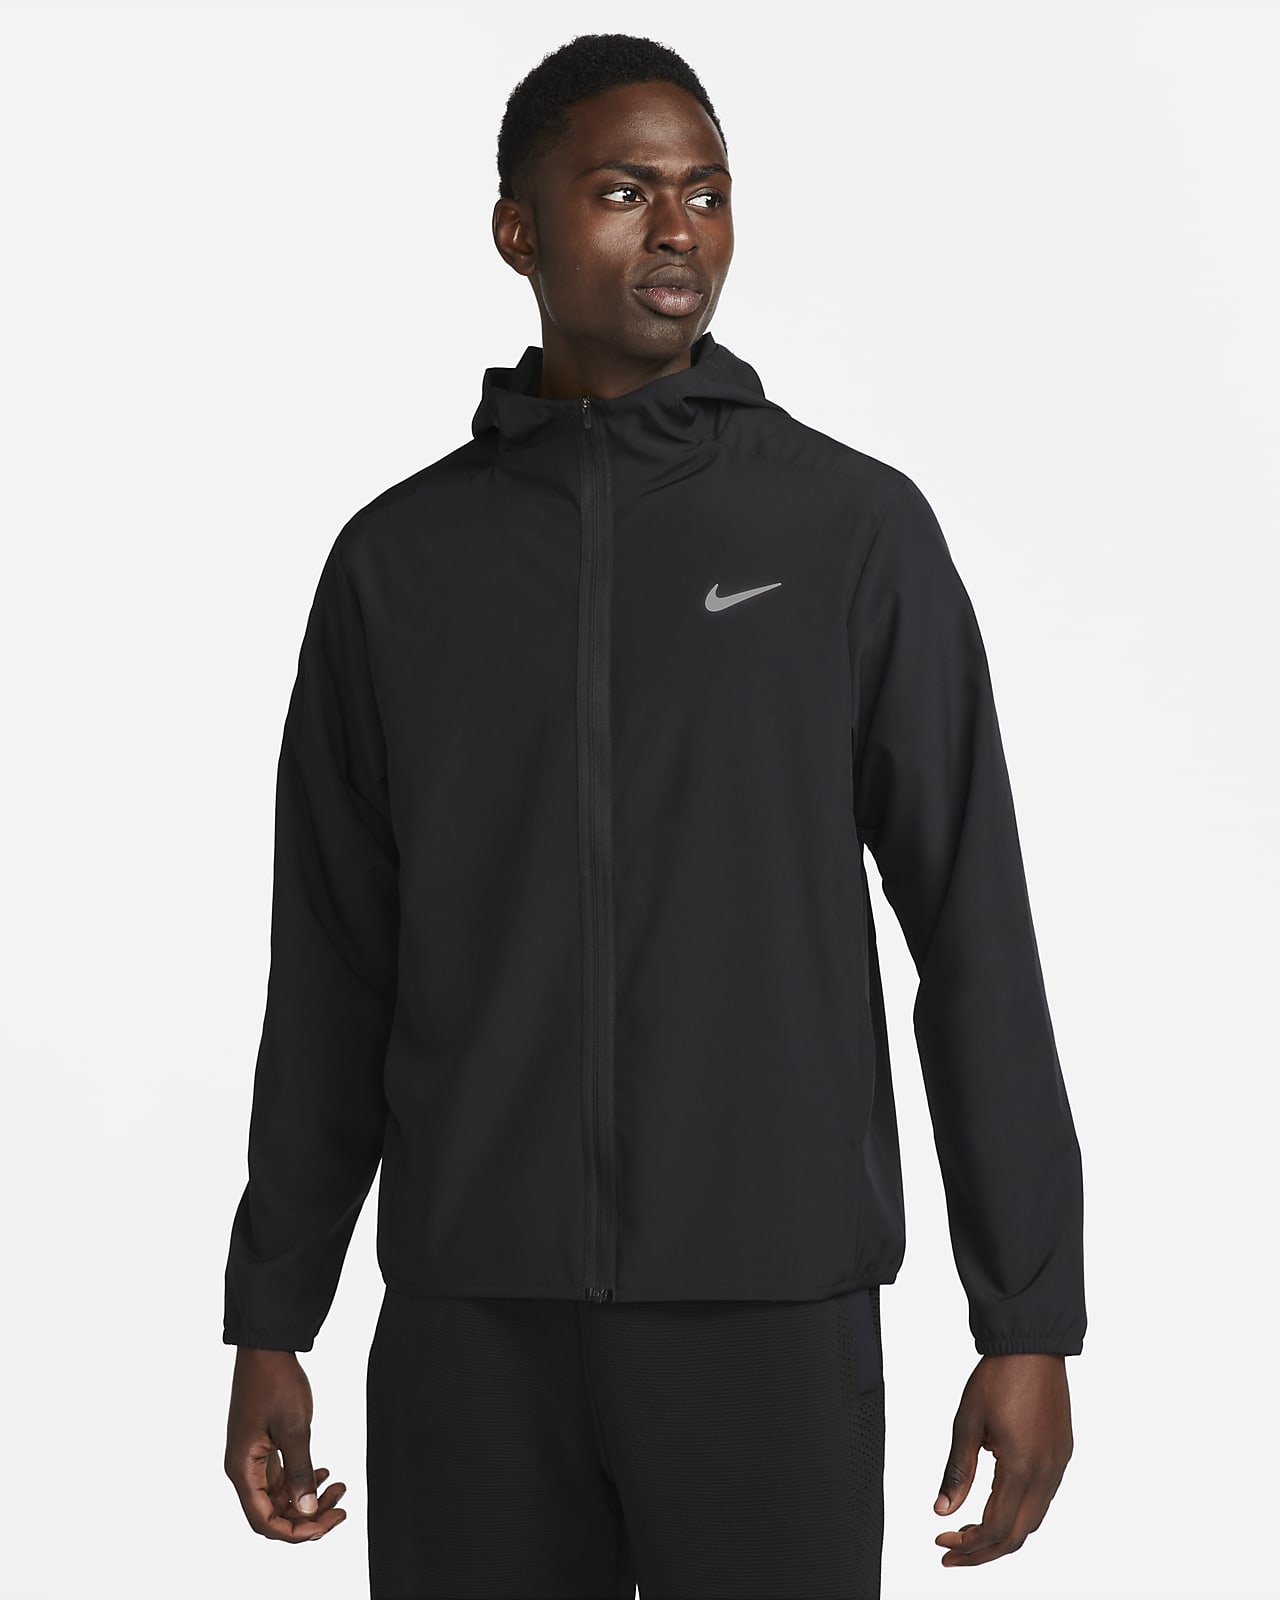 Pánská všestranná bunda Dri-FIT Nike Form s kapucí